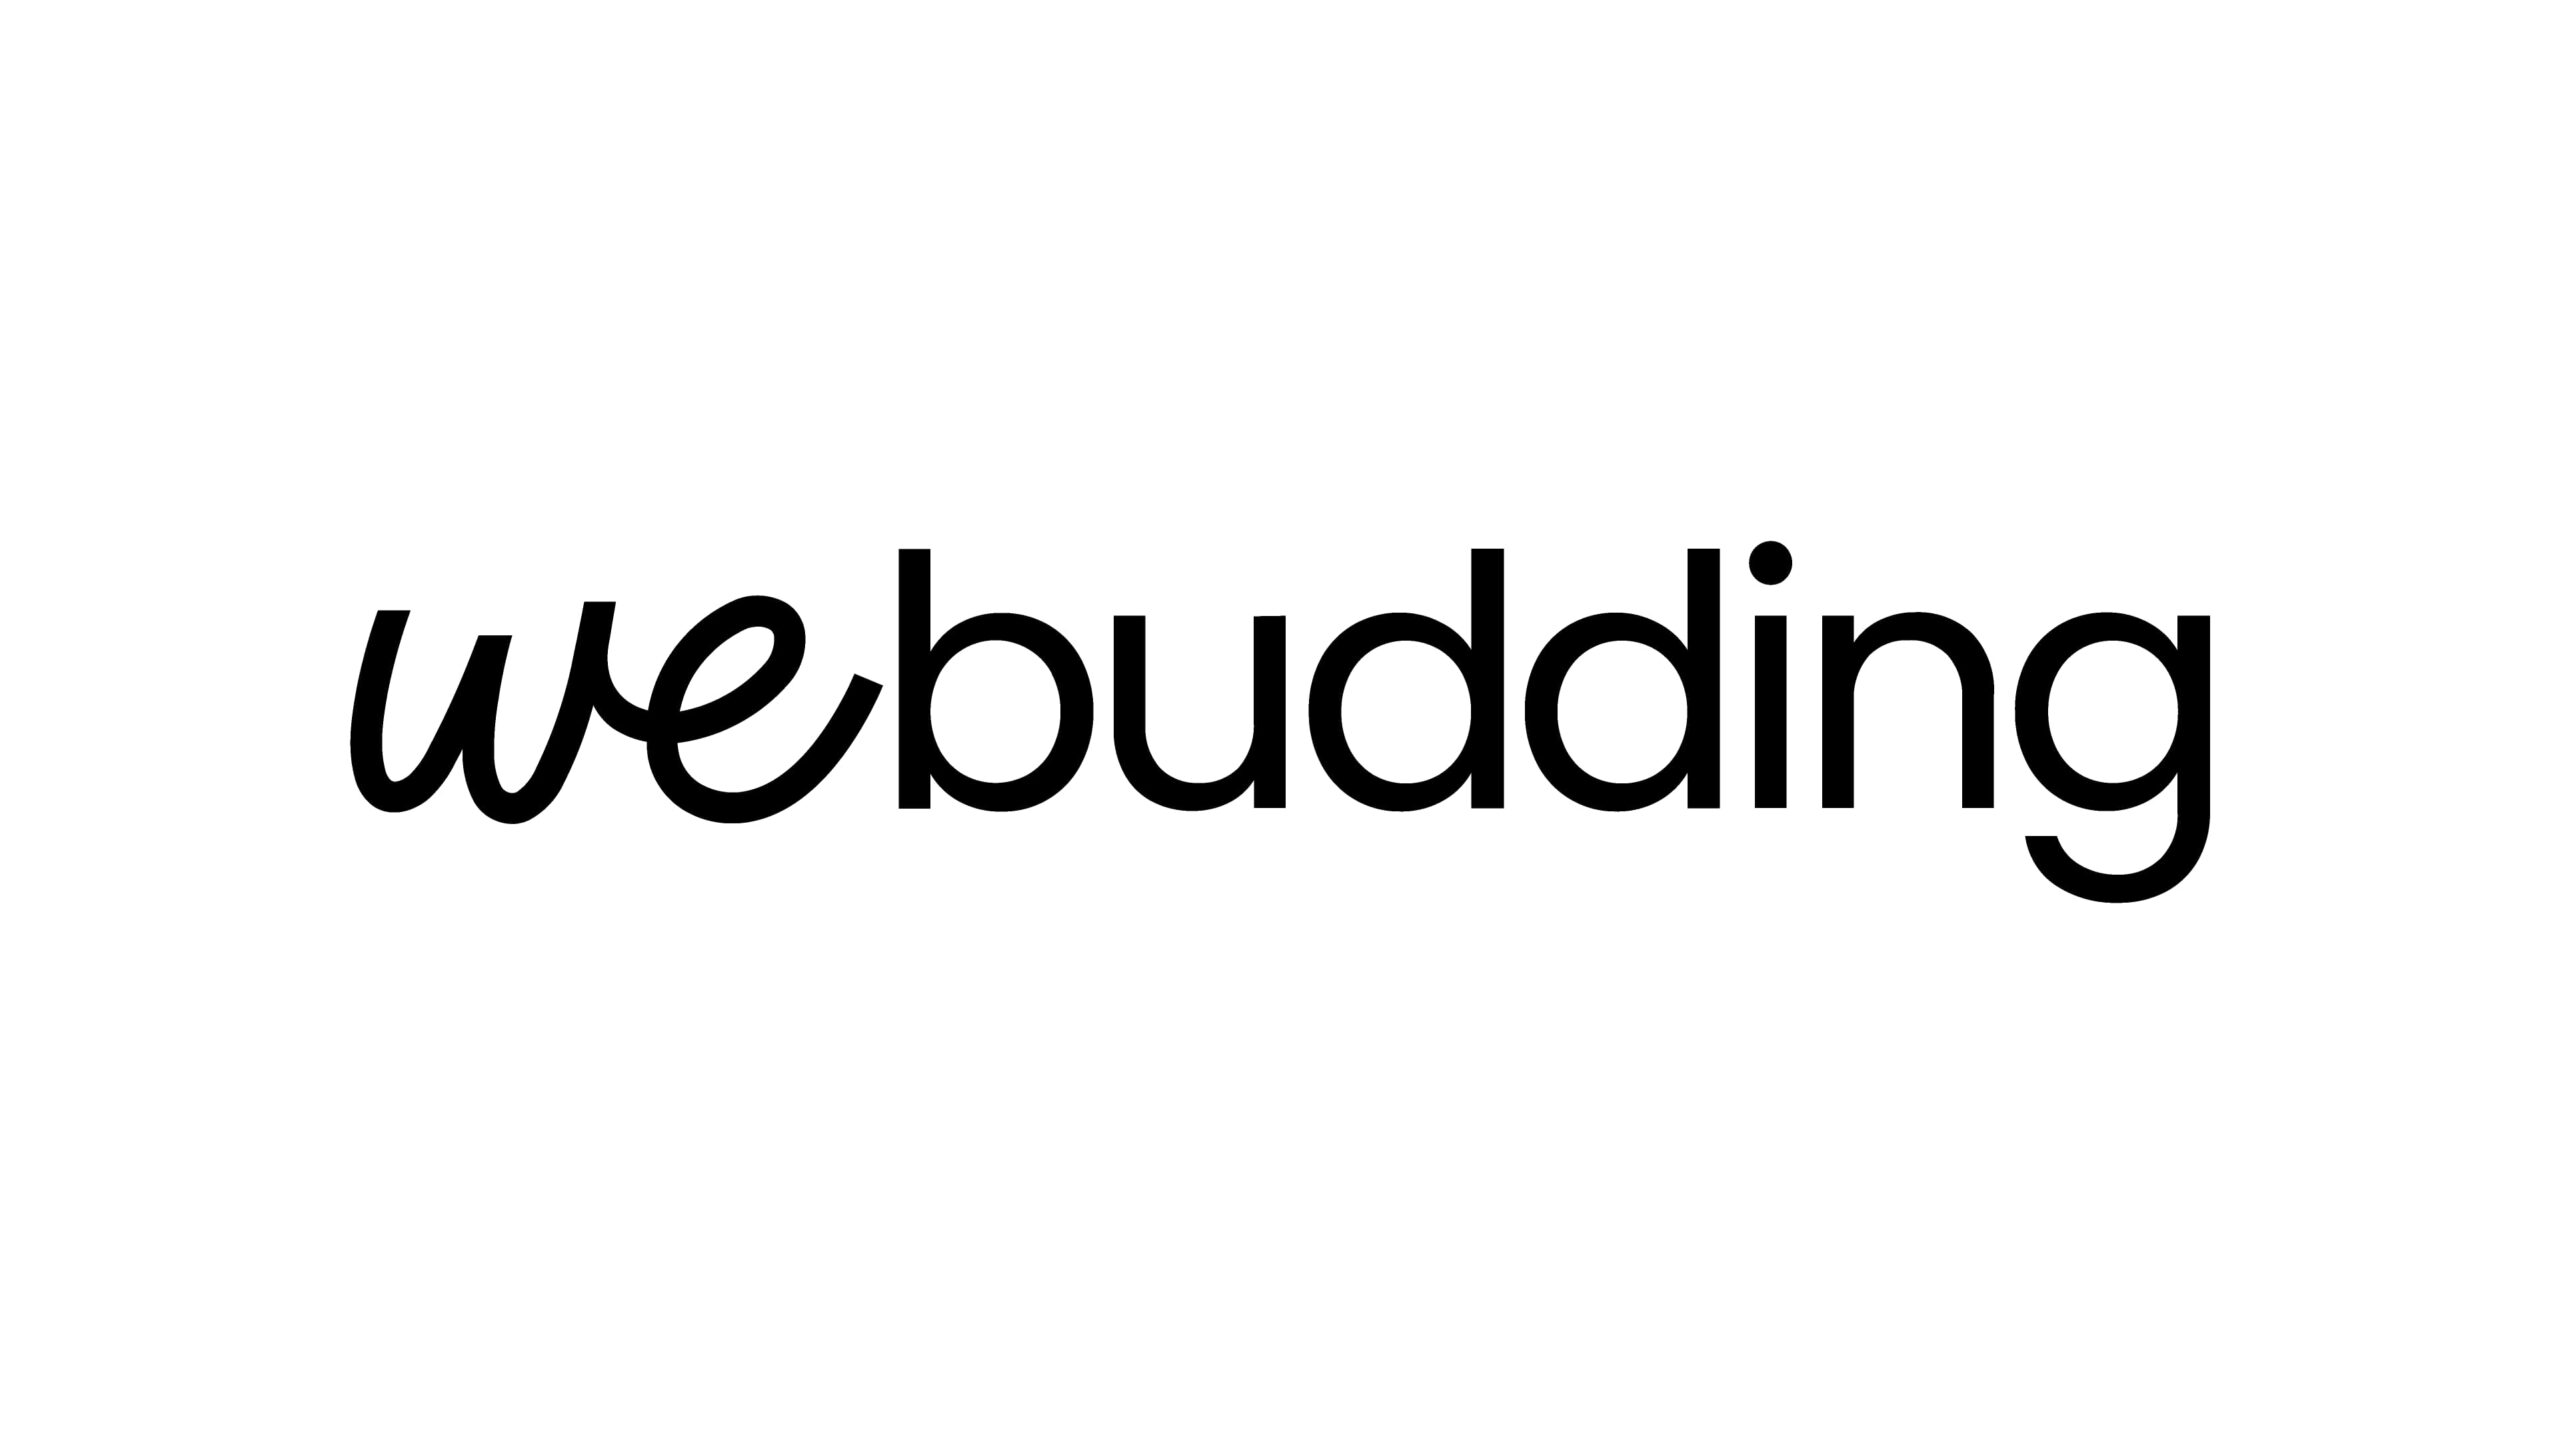 ノートアプリ「Goodnotes」がデジタル文具企業WeBuddingに190万ドルを投資